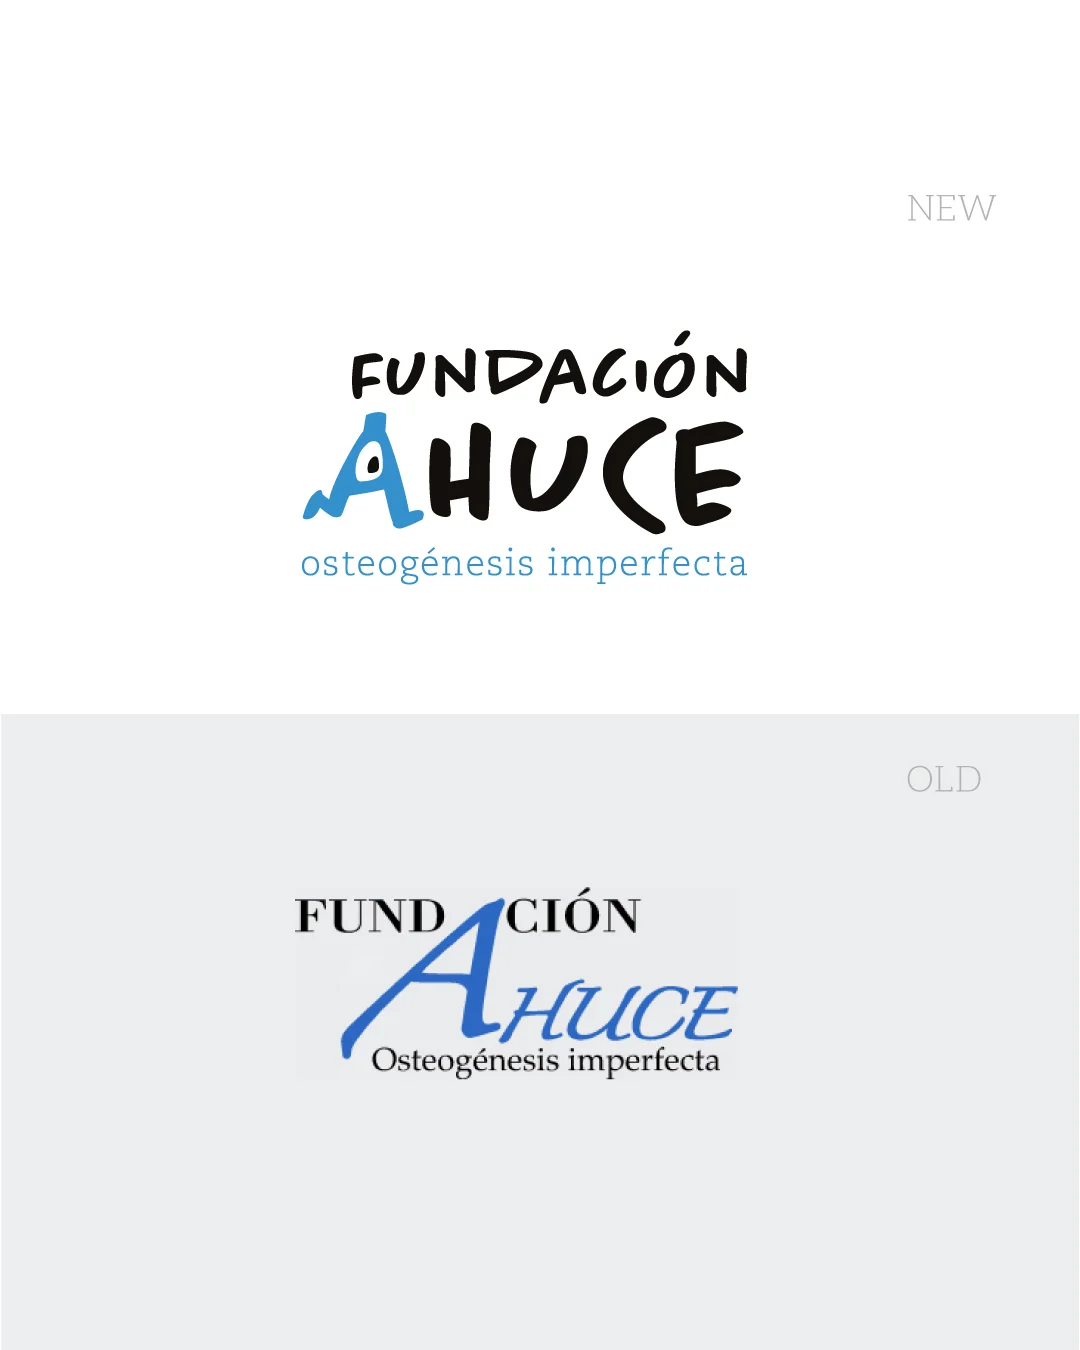 Rediseño de marca (rebranding) para la Fundación Ahuce